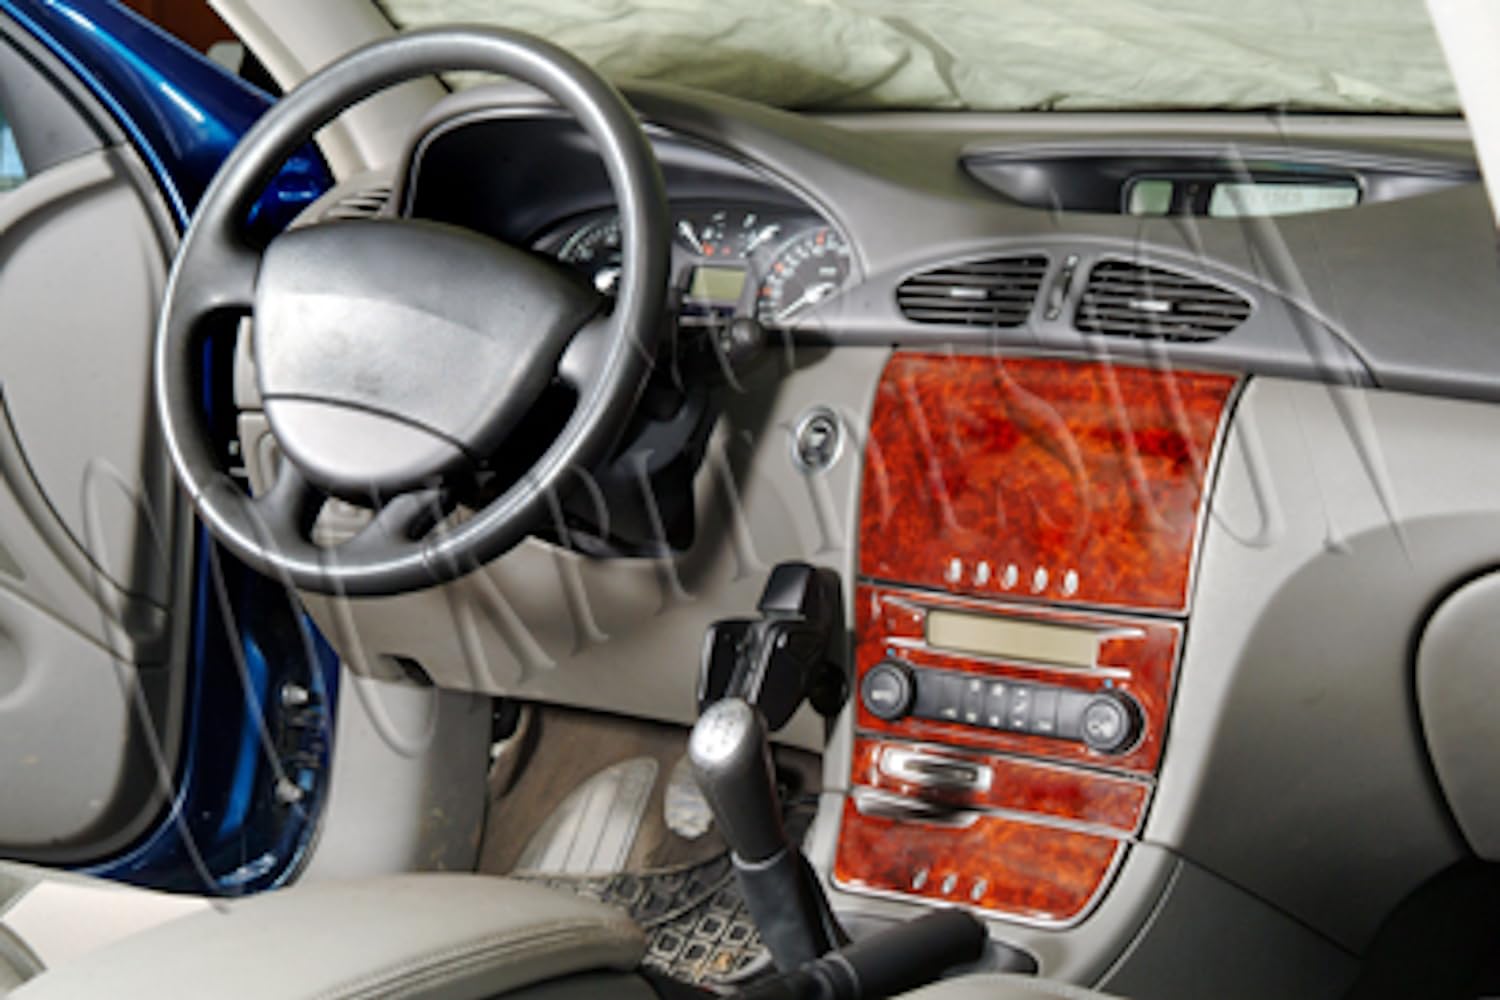 AUTOKLEIDUNG® Cockpit Dekor kompatibel mit Renault Laguna Baujahr 02/2001-03/2005 7 Teile | 3D Carbon Optik von Autokleidung